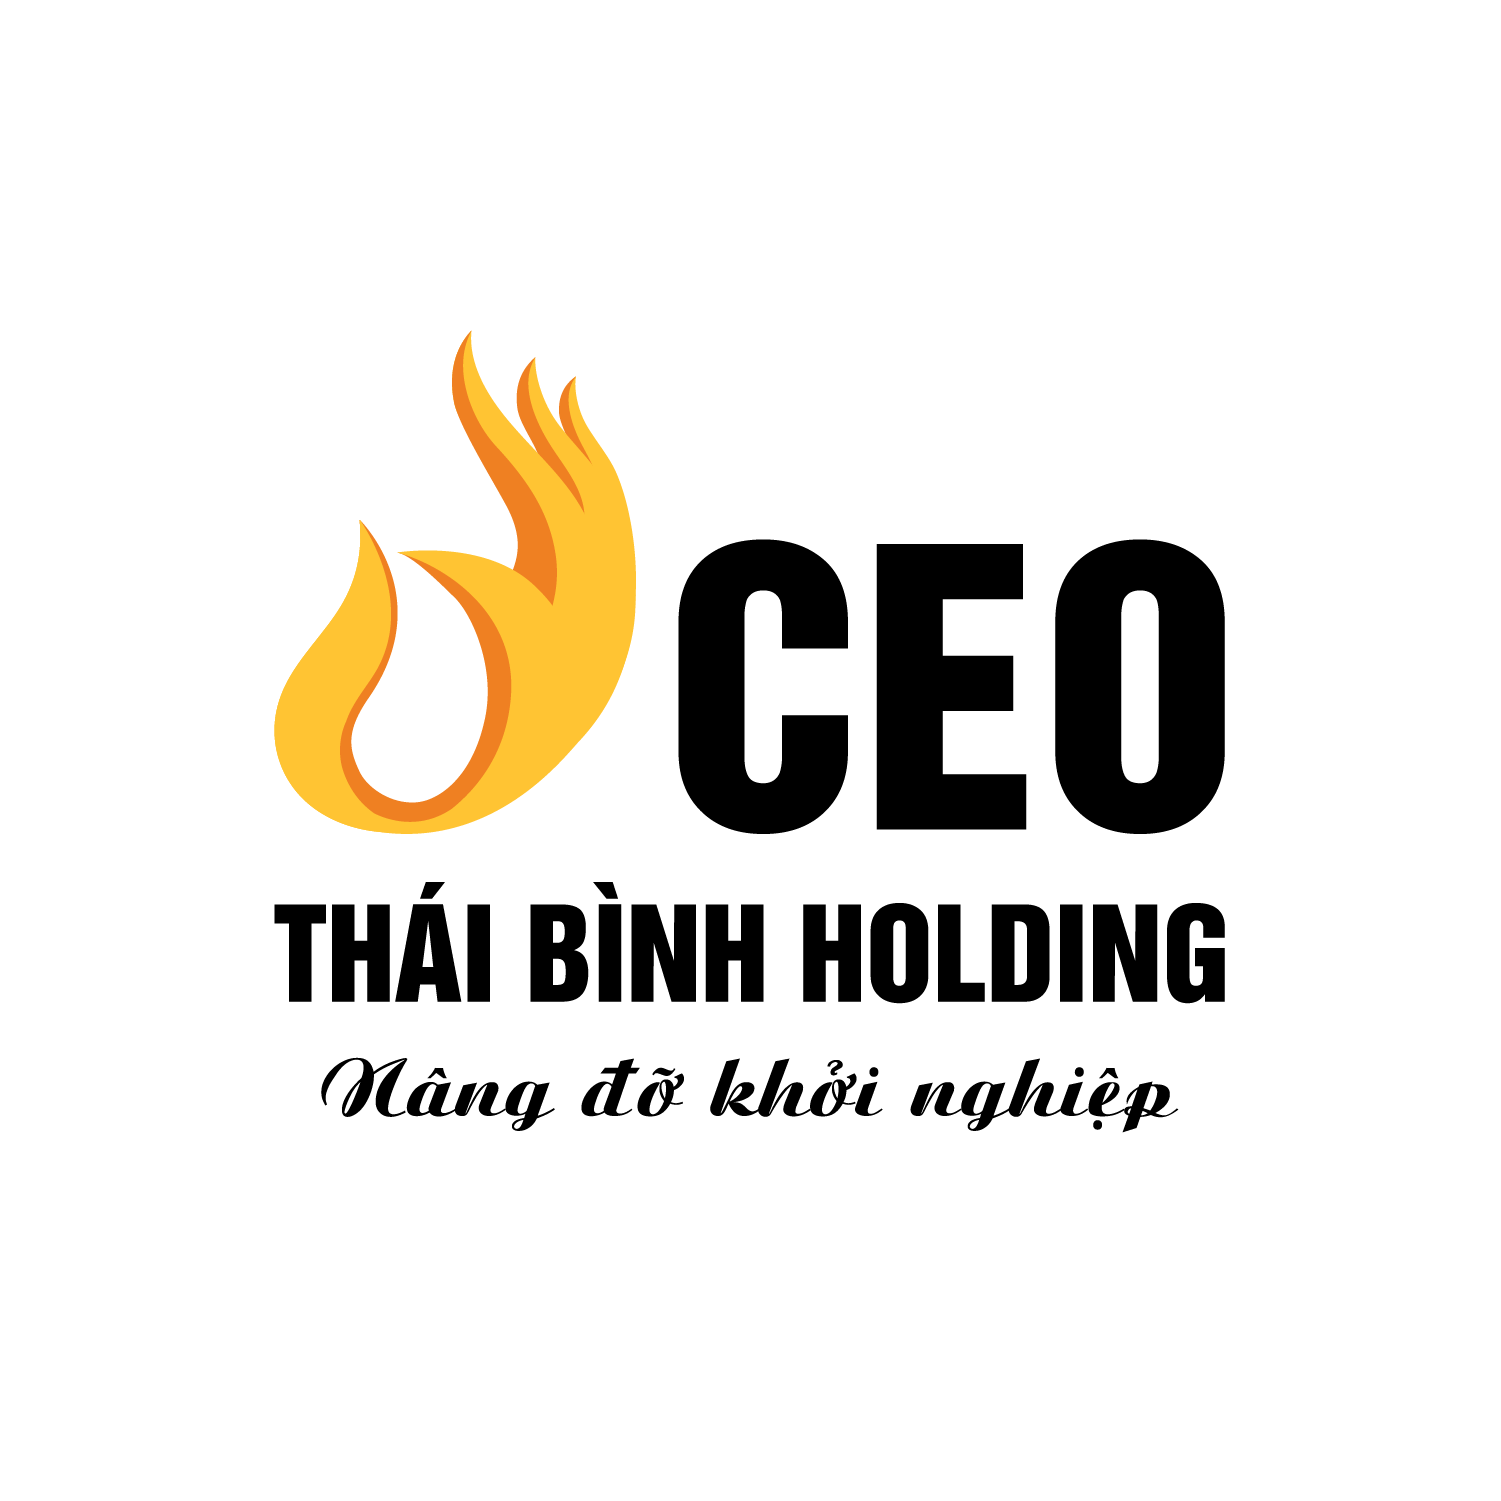 Công ty Cổ phần CEO Thái Bình Holding tuyển dụng Nhân Viên Digital Marketing lương thưởng hấp dẫn, chế độ đãi ngộ cao, môi trường chuyên nghiệp